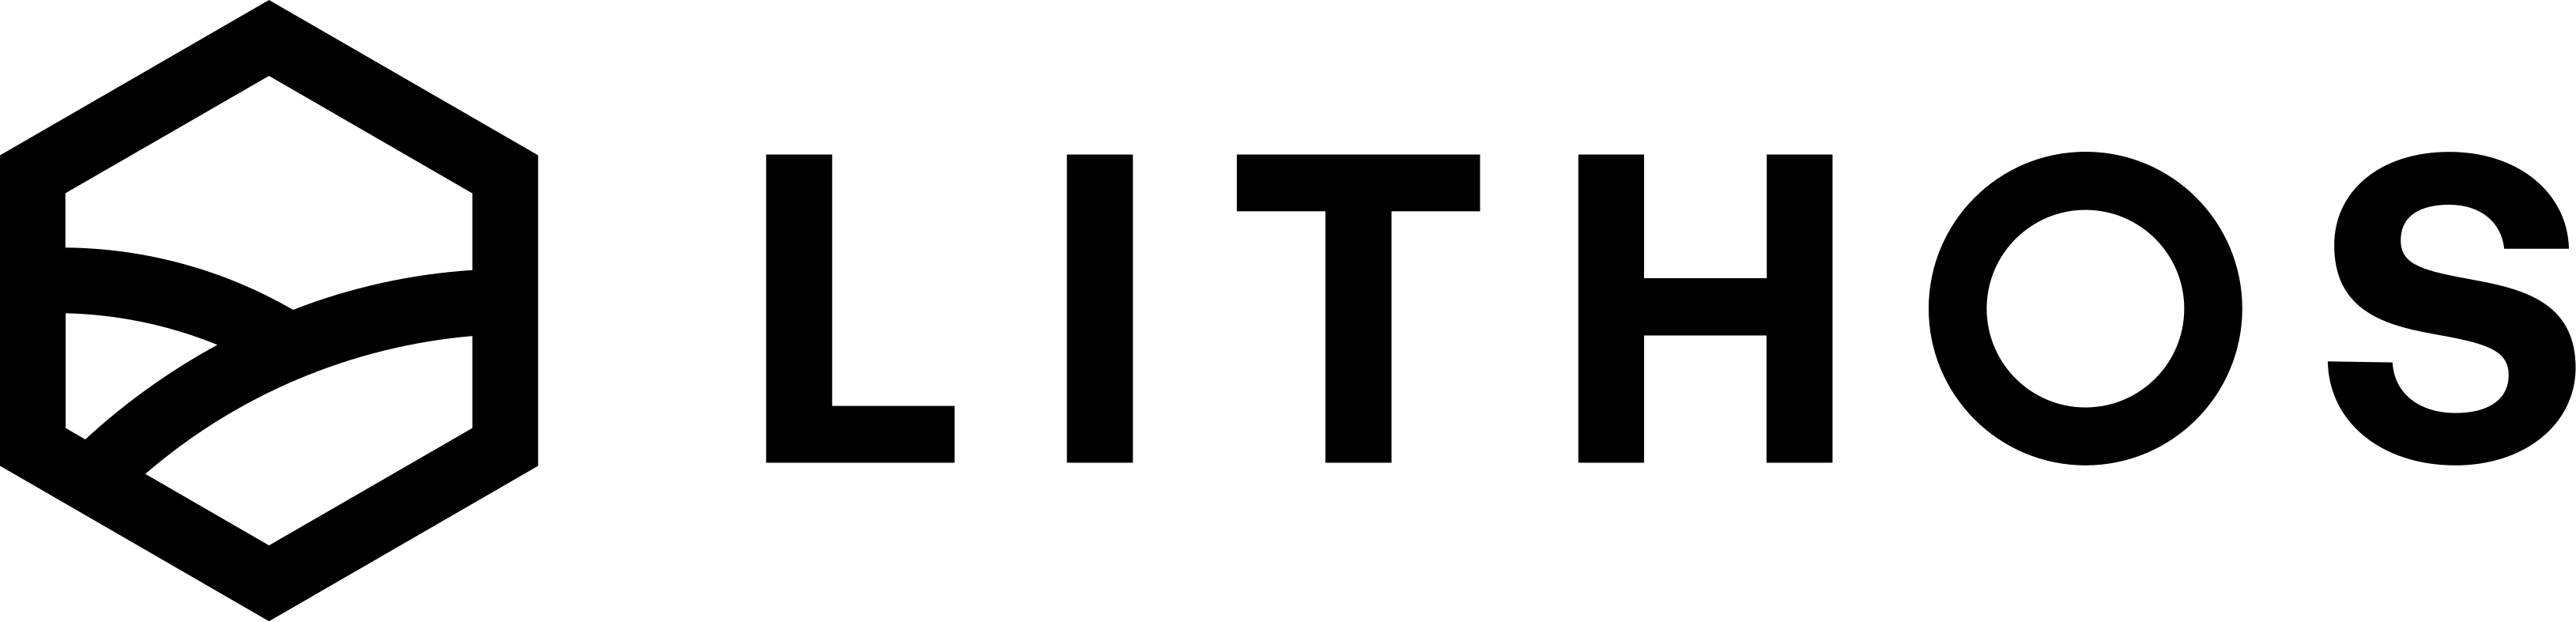 logo-black-transparent-large.png